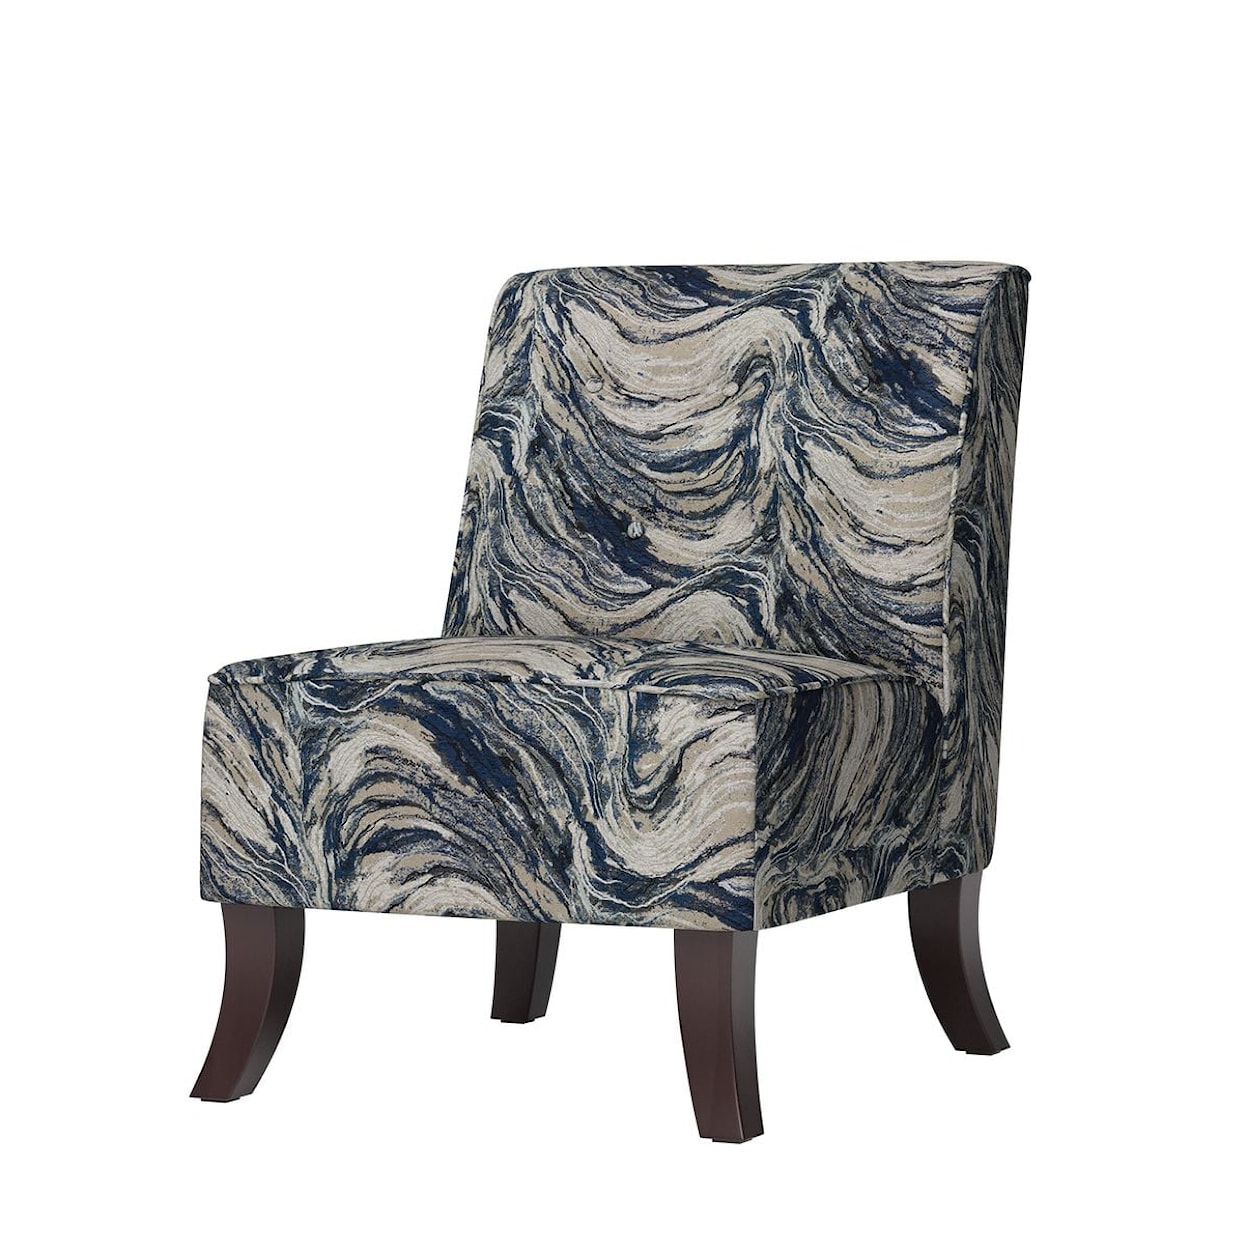 Hughes Furniture 8785 Armless Chair